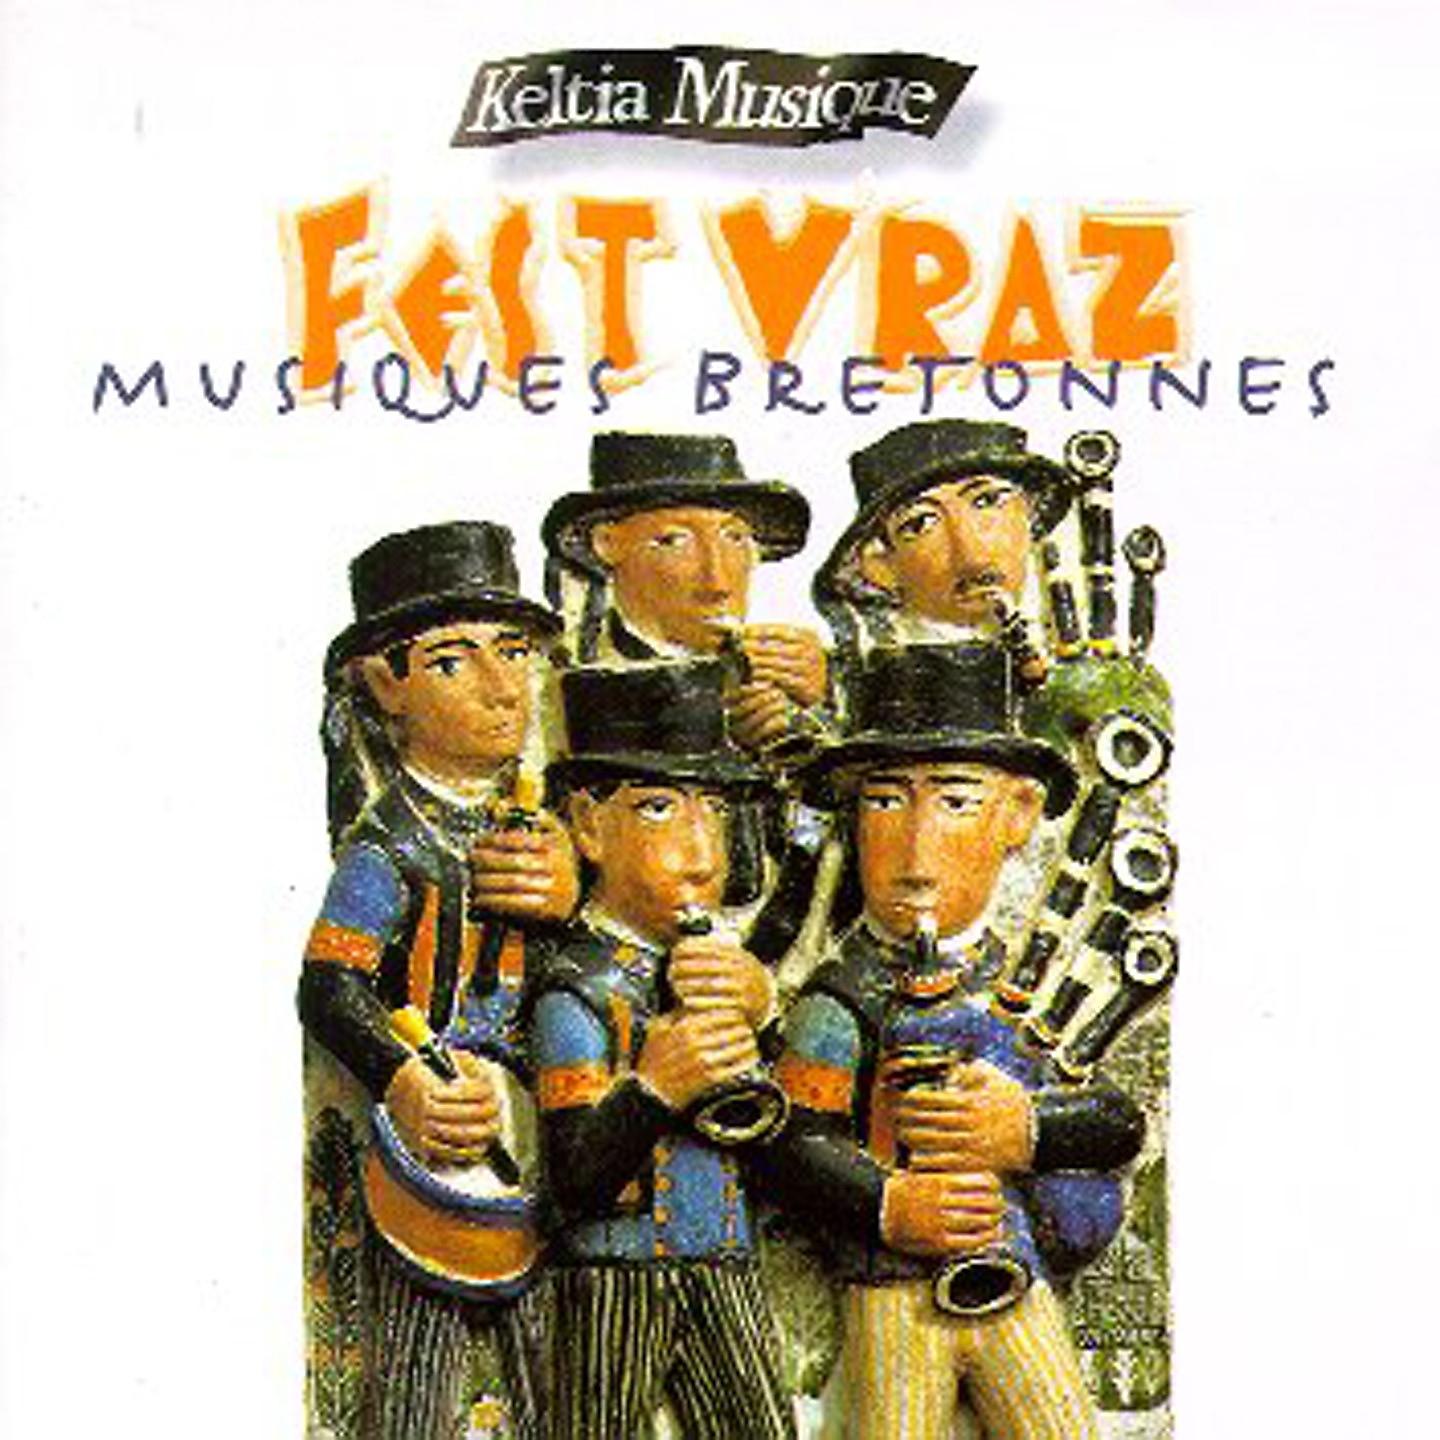 Постер альбома Fest vraz, vol. 2 (Musiques bretonnes) [Celtic Music Keltia Musique]